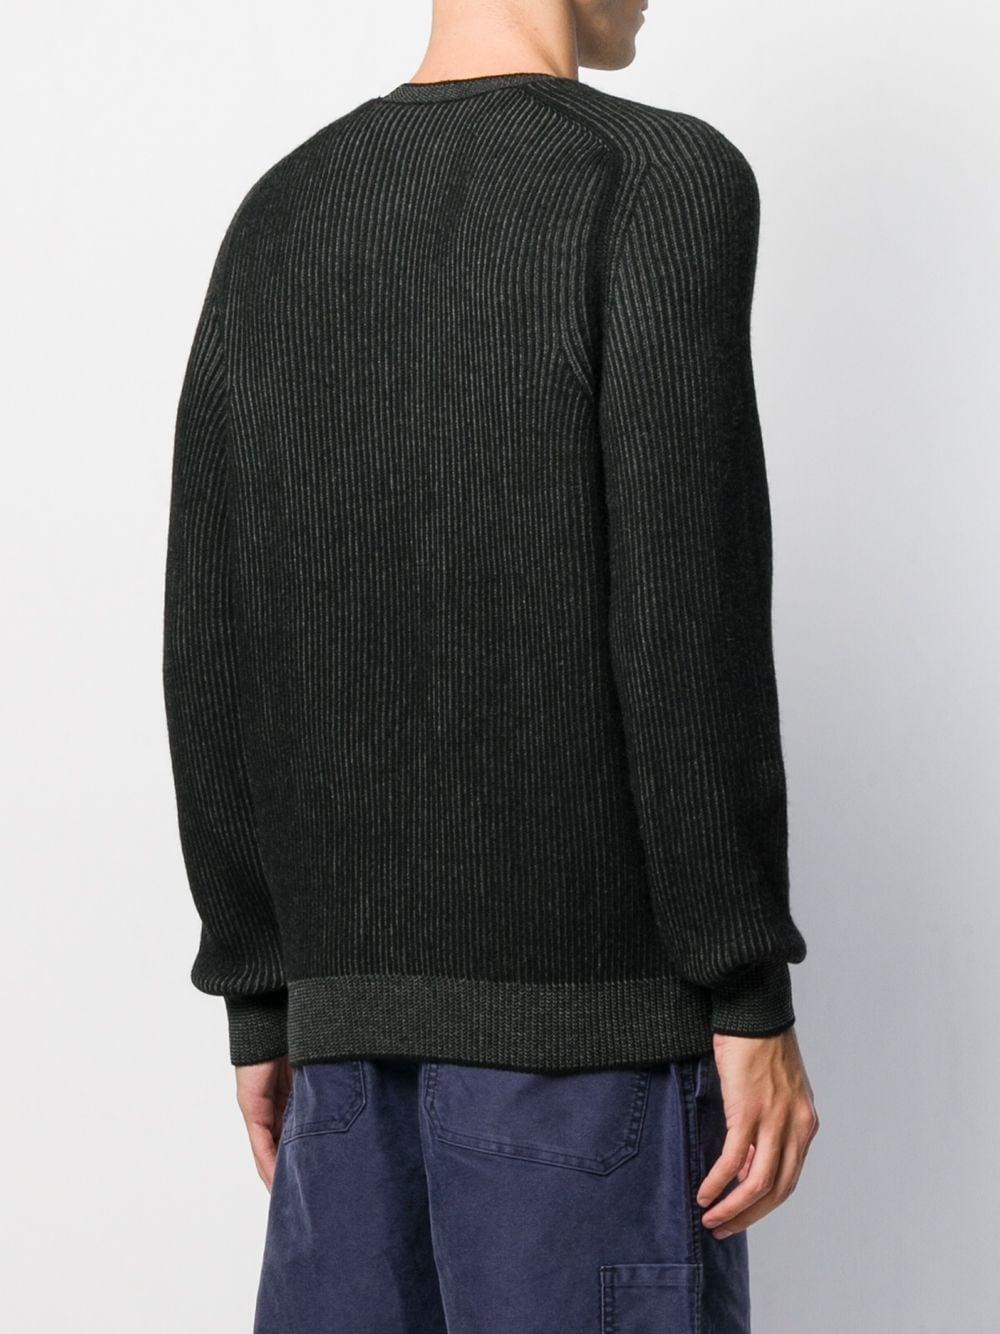 Sease Cashmere Reversible Knit Jumper in Black for Men - Lyst